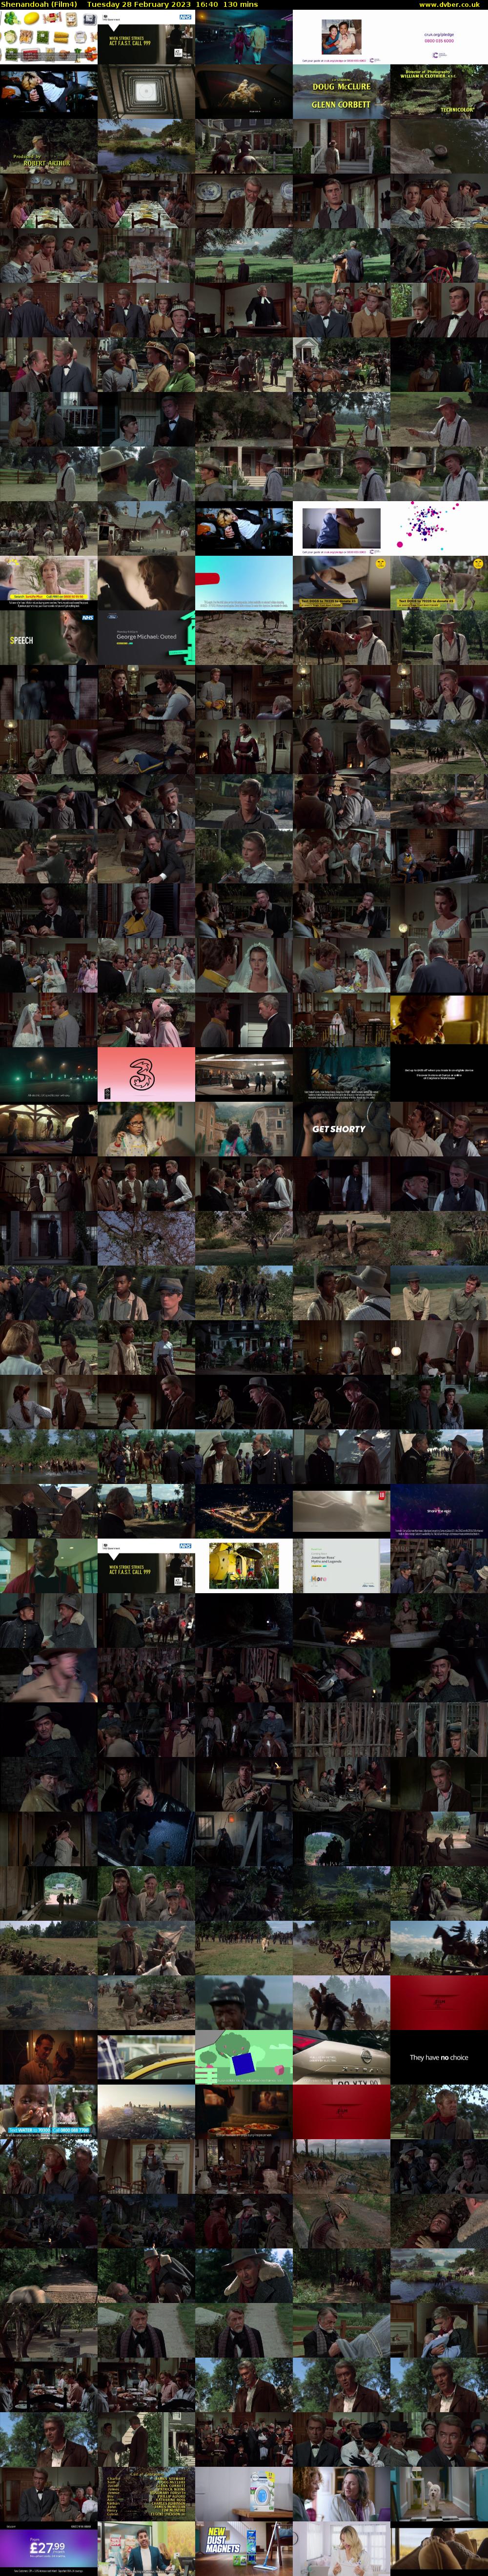 Shenandoah (Film4) Tuesday 28 February 2023 16:40 - 18:50